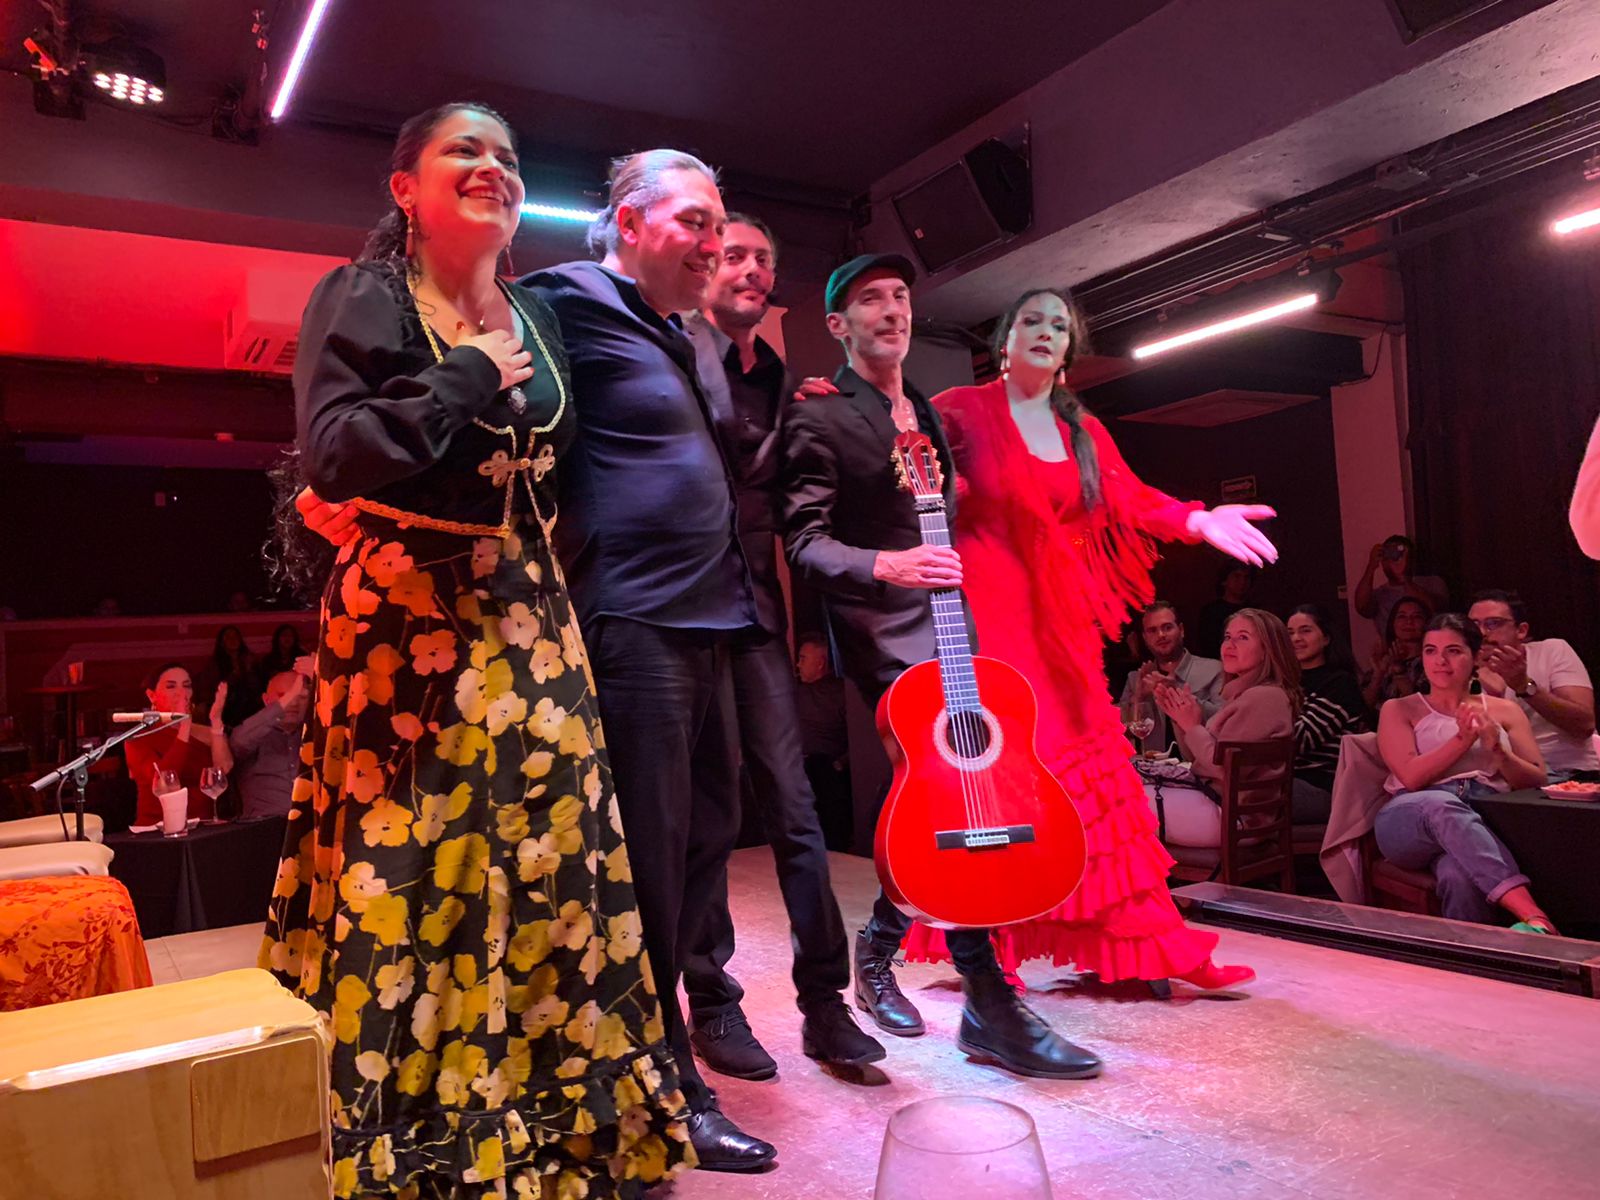 Tablao Flamenco CDMX México, Show de Flamenco CDMX, Espectaculo Flamento CDMX, Juncal Tablao Flamenco